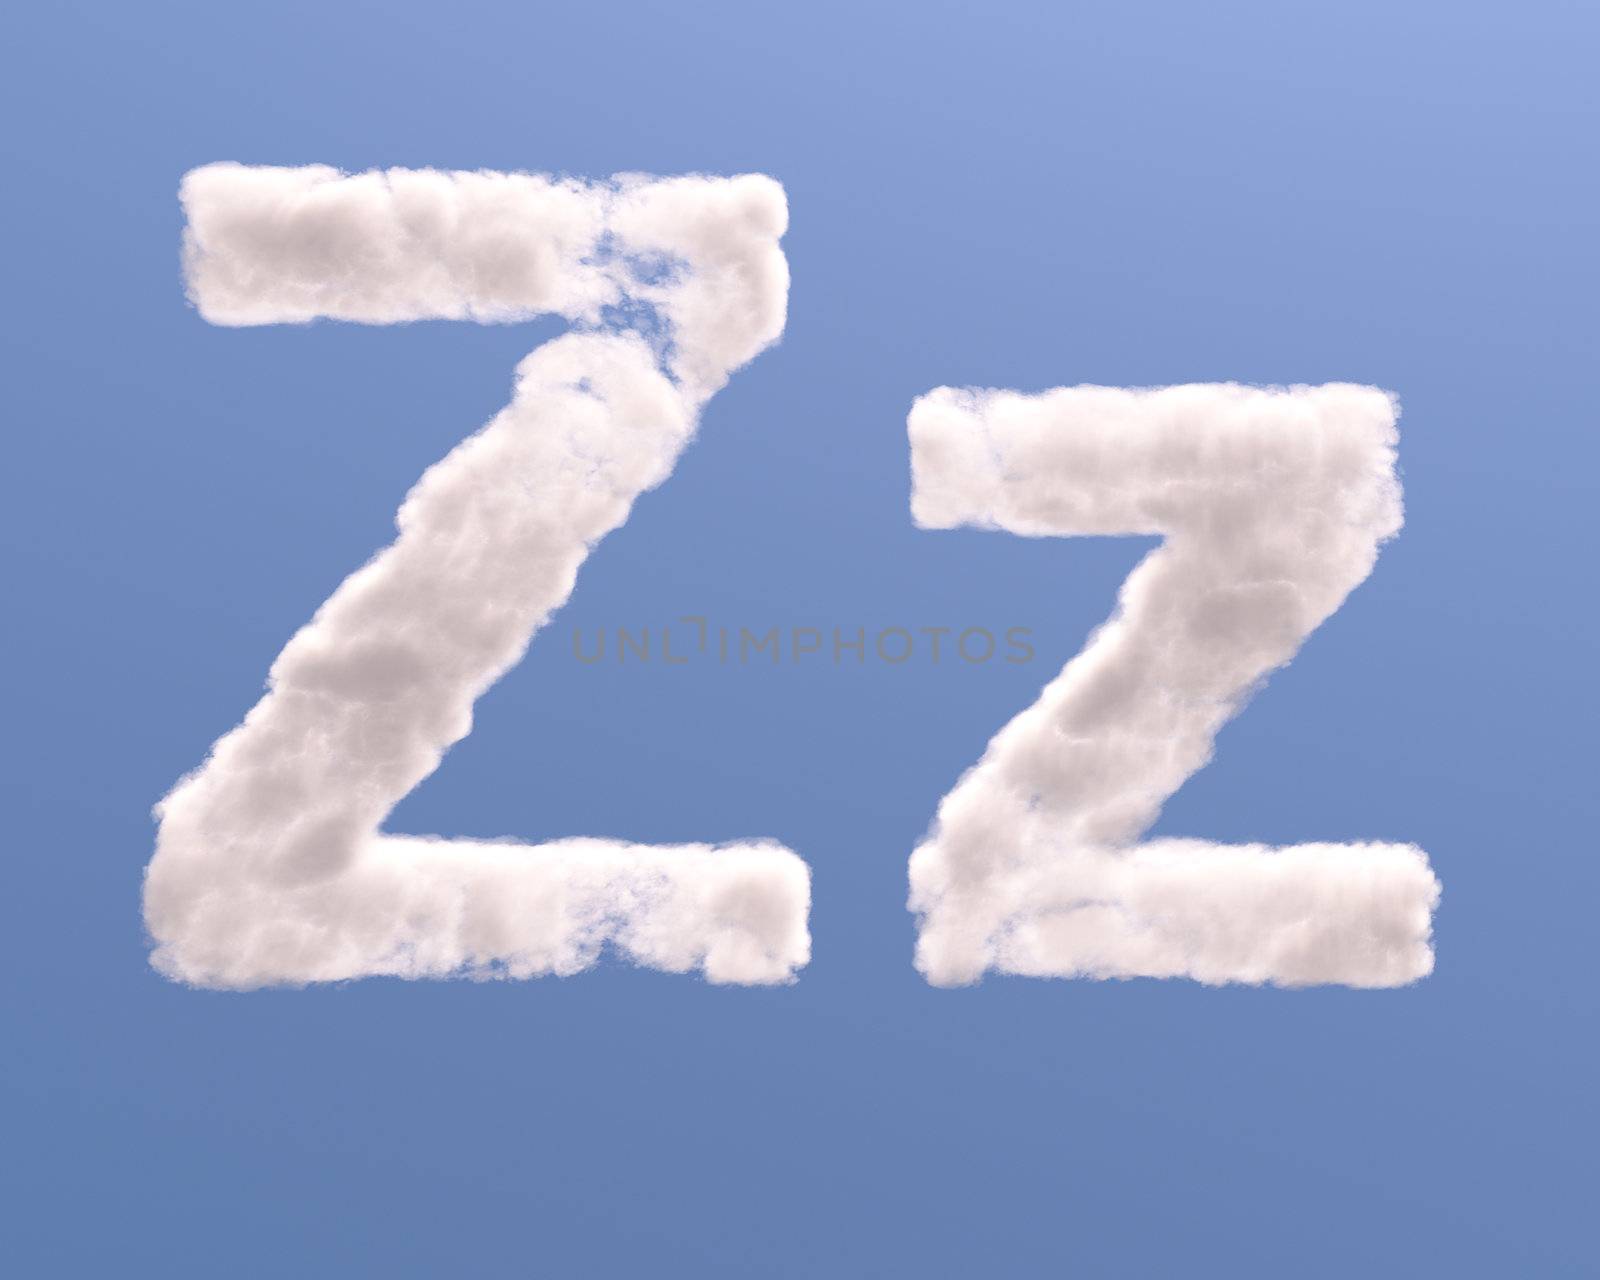 Letter Z cloud shape by Zelfit